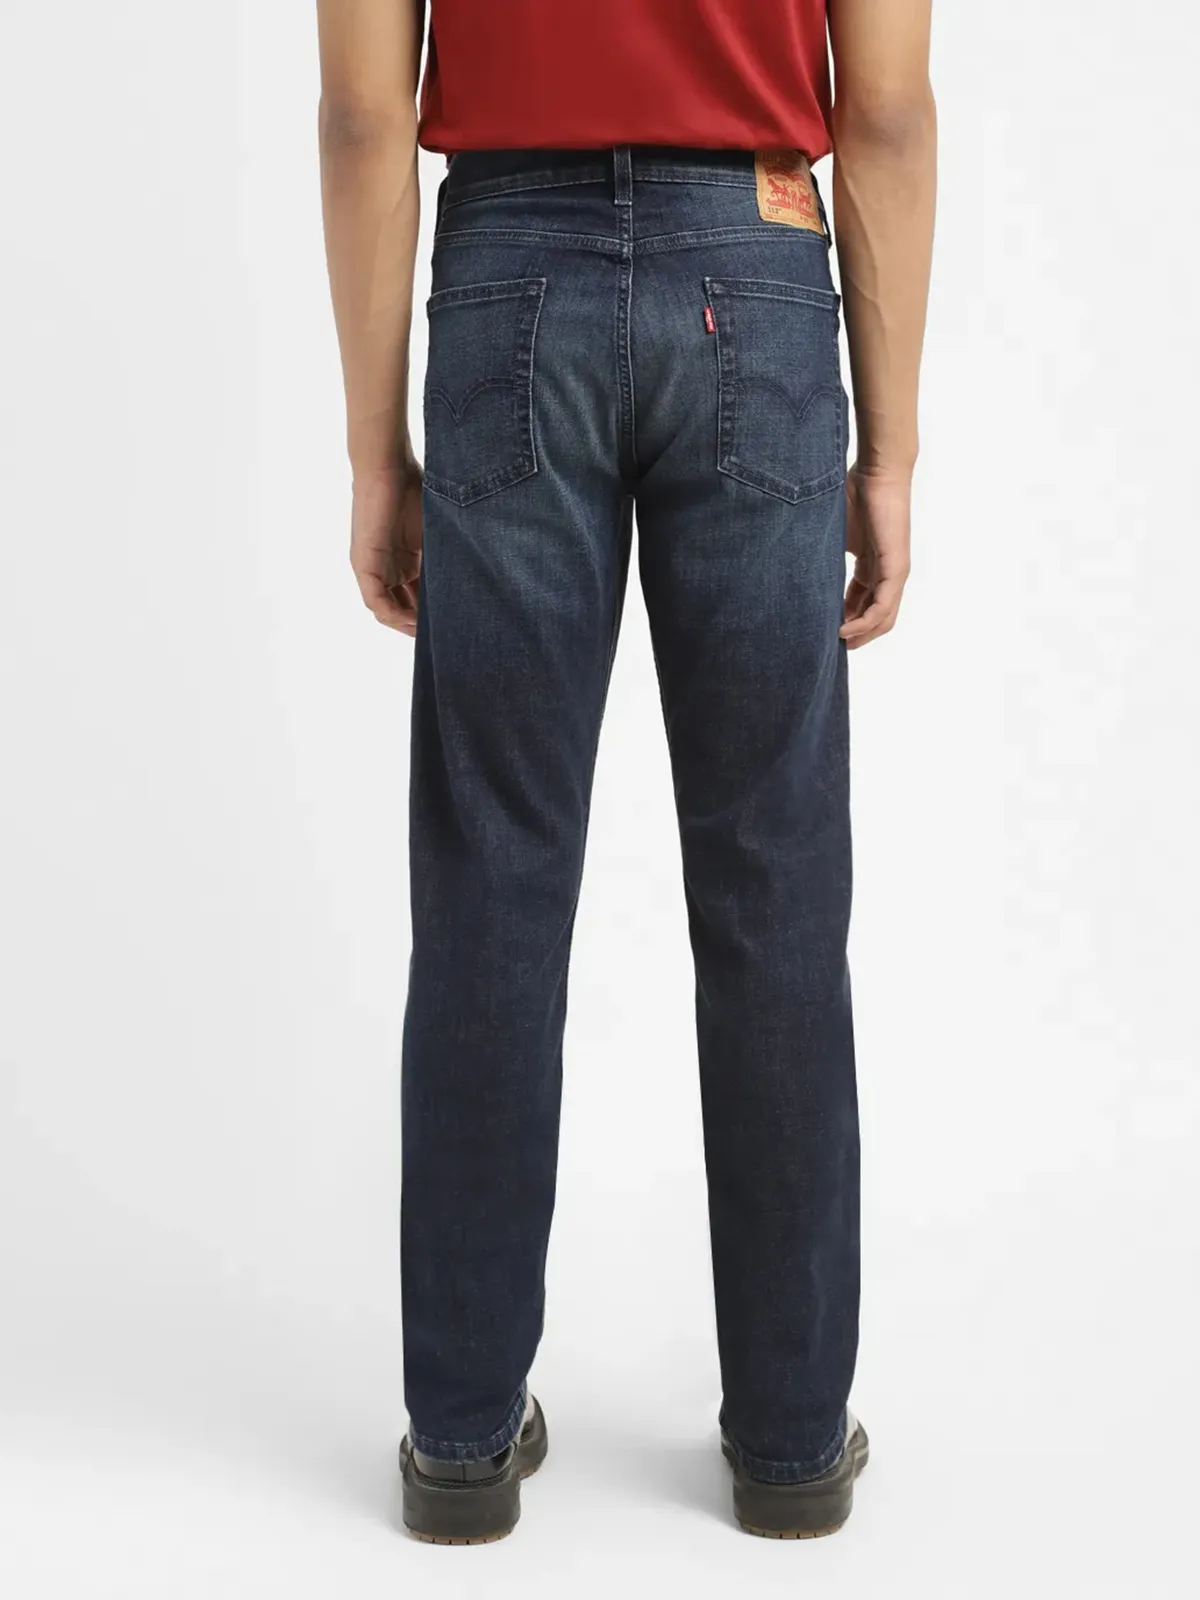 Levis dark navy washed 511 slim fit jeans